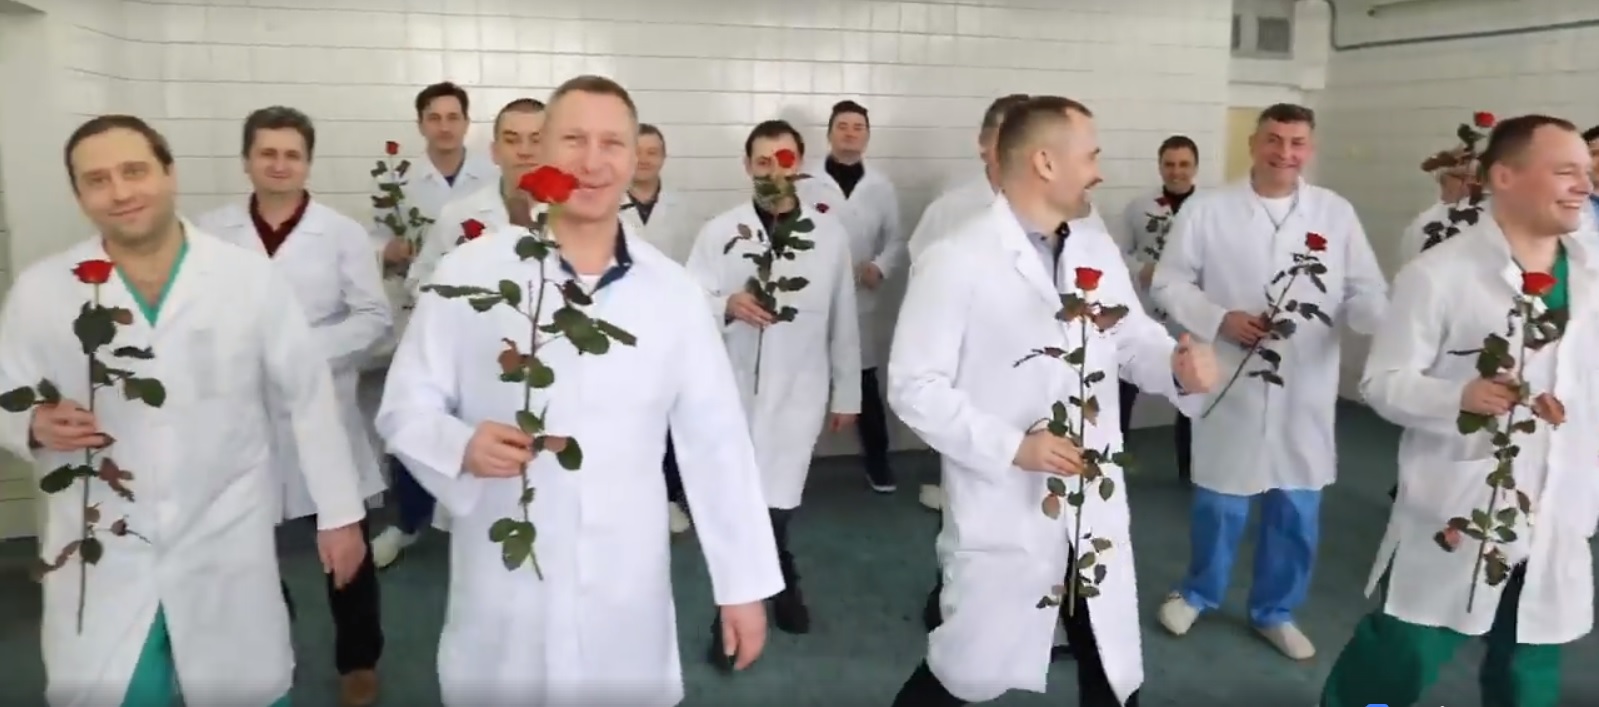 Відео-вітання чернігівських лікарів до 8 березня б’є рекорди за переглядами